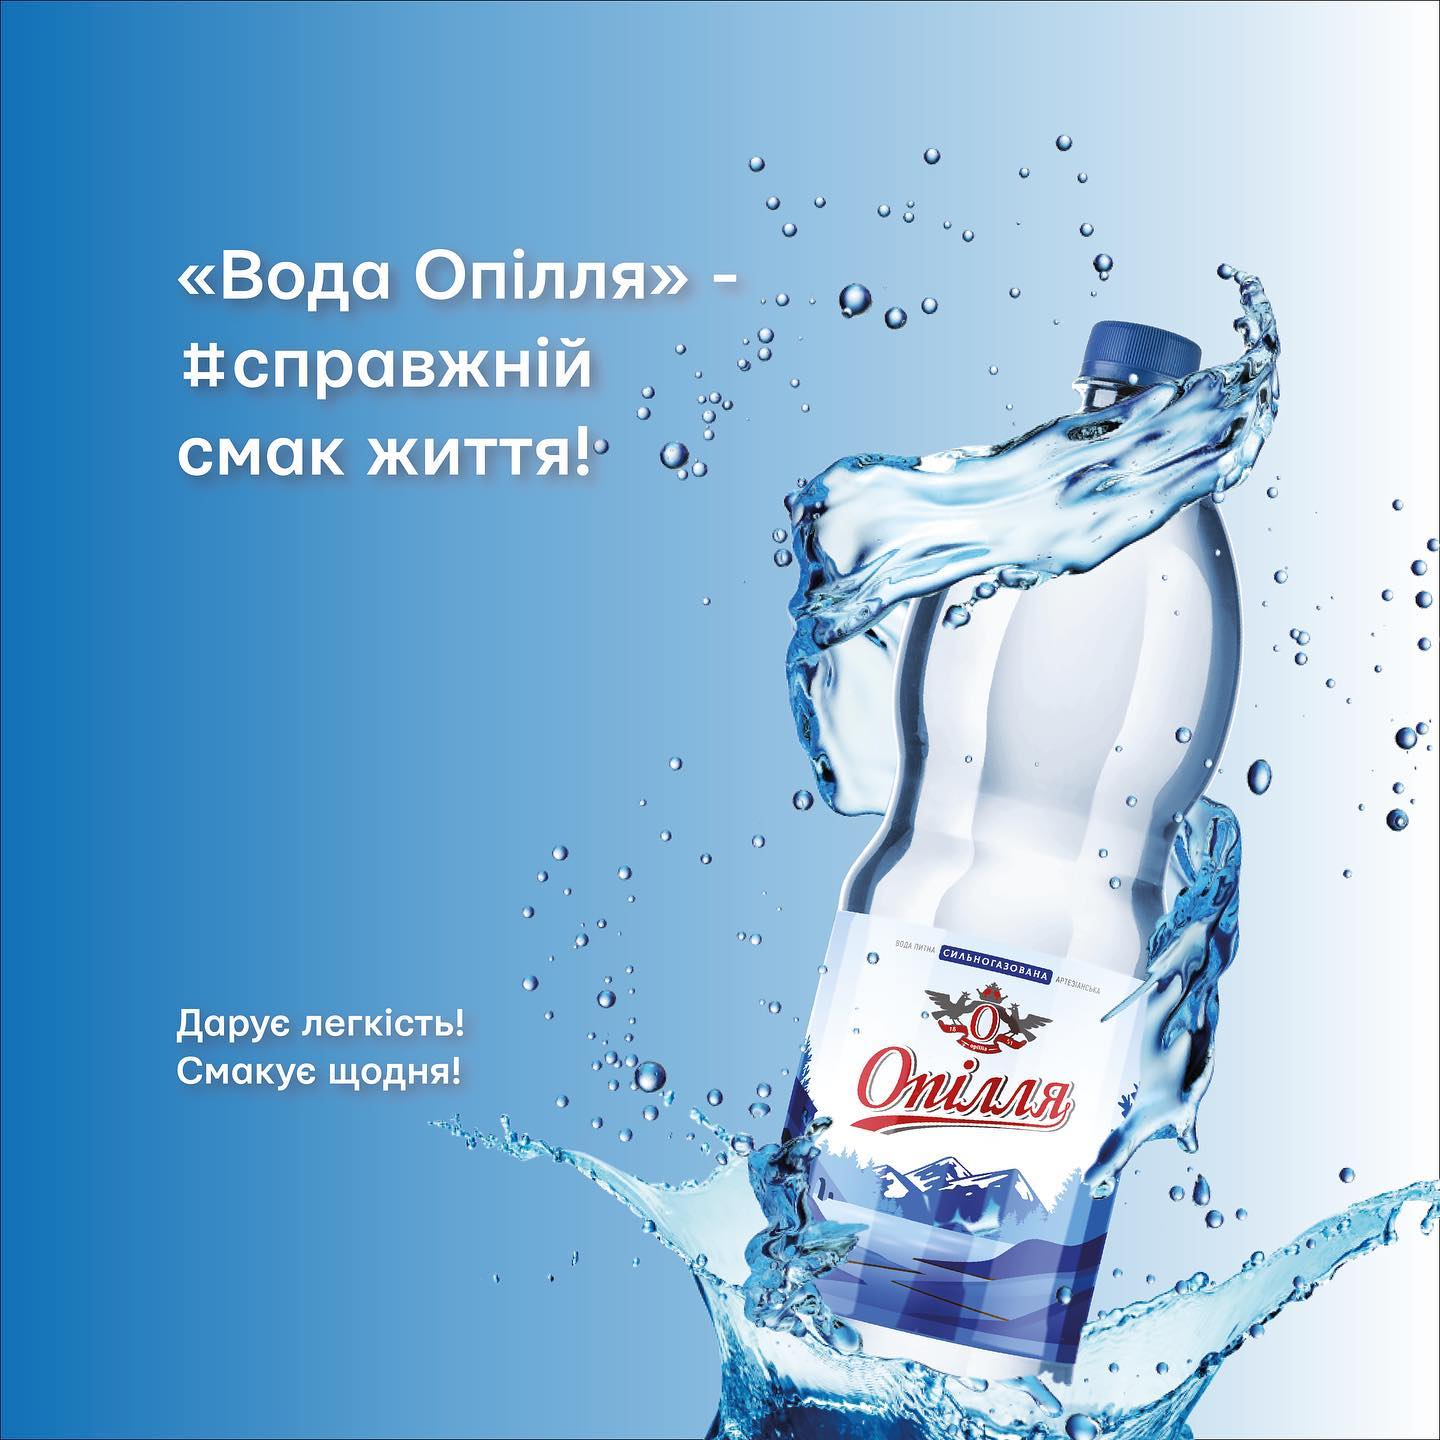 «Вода Опілля» — дарує легкість, смакує щодня!

«Вода Опілля» — #справжній смак житт